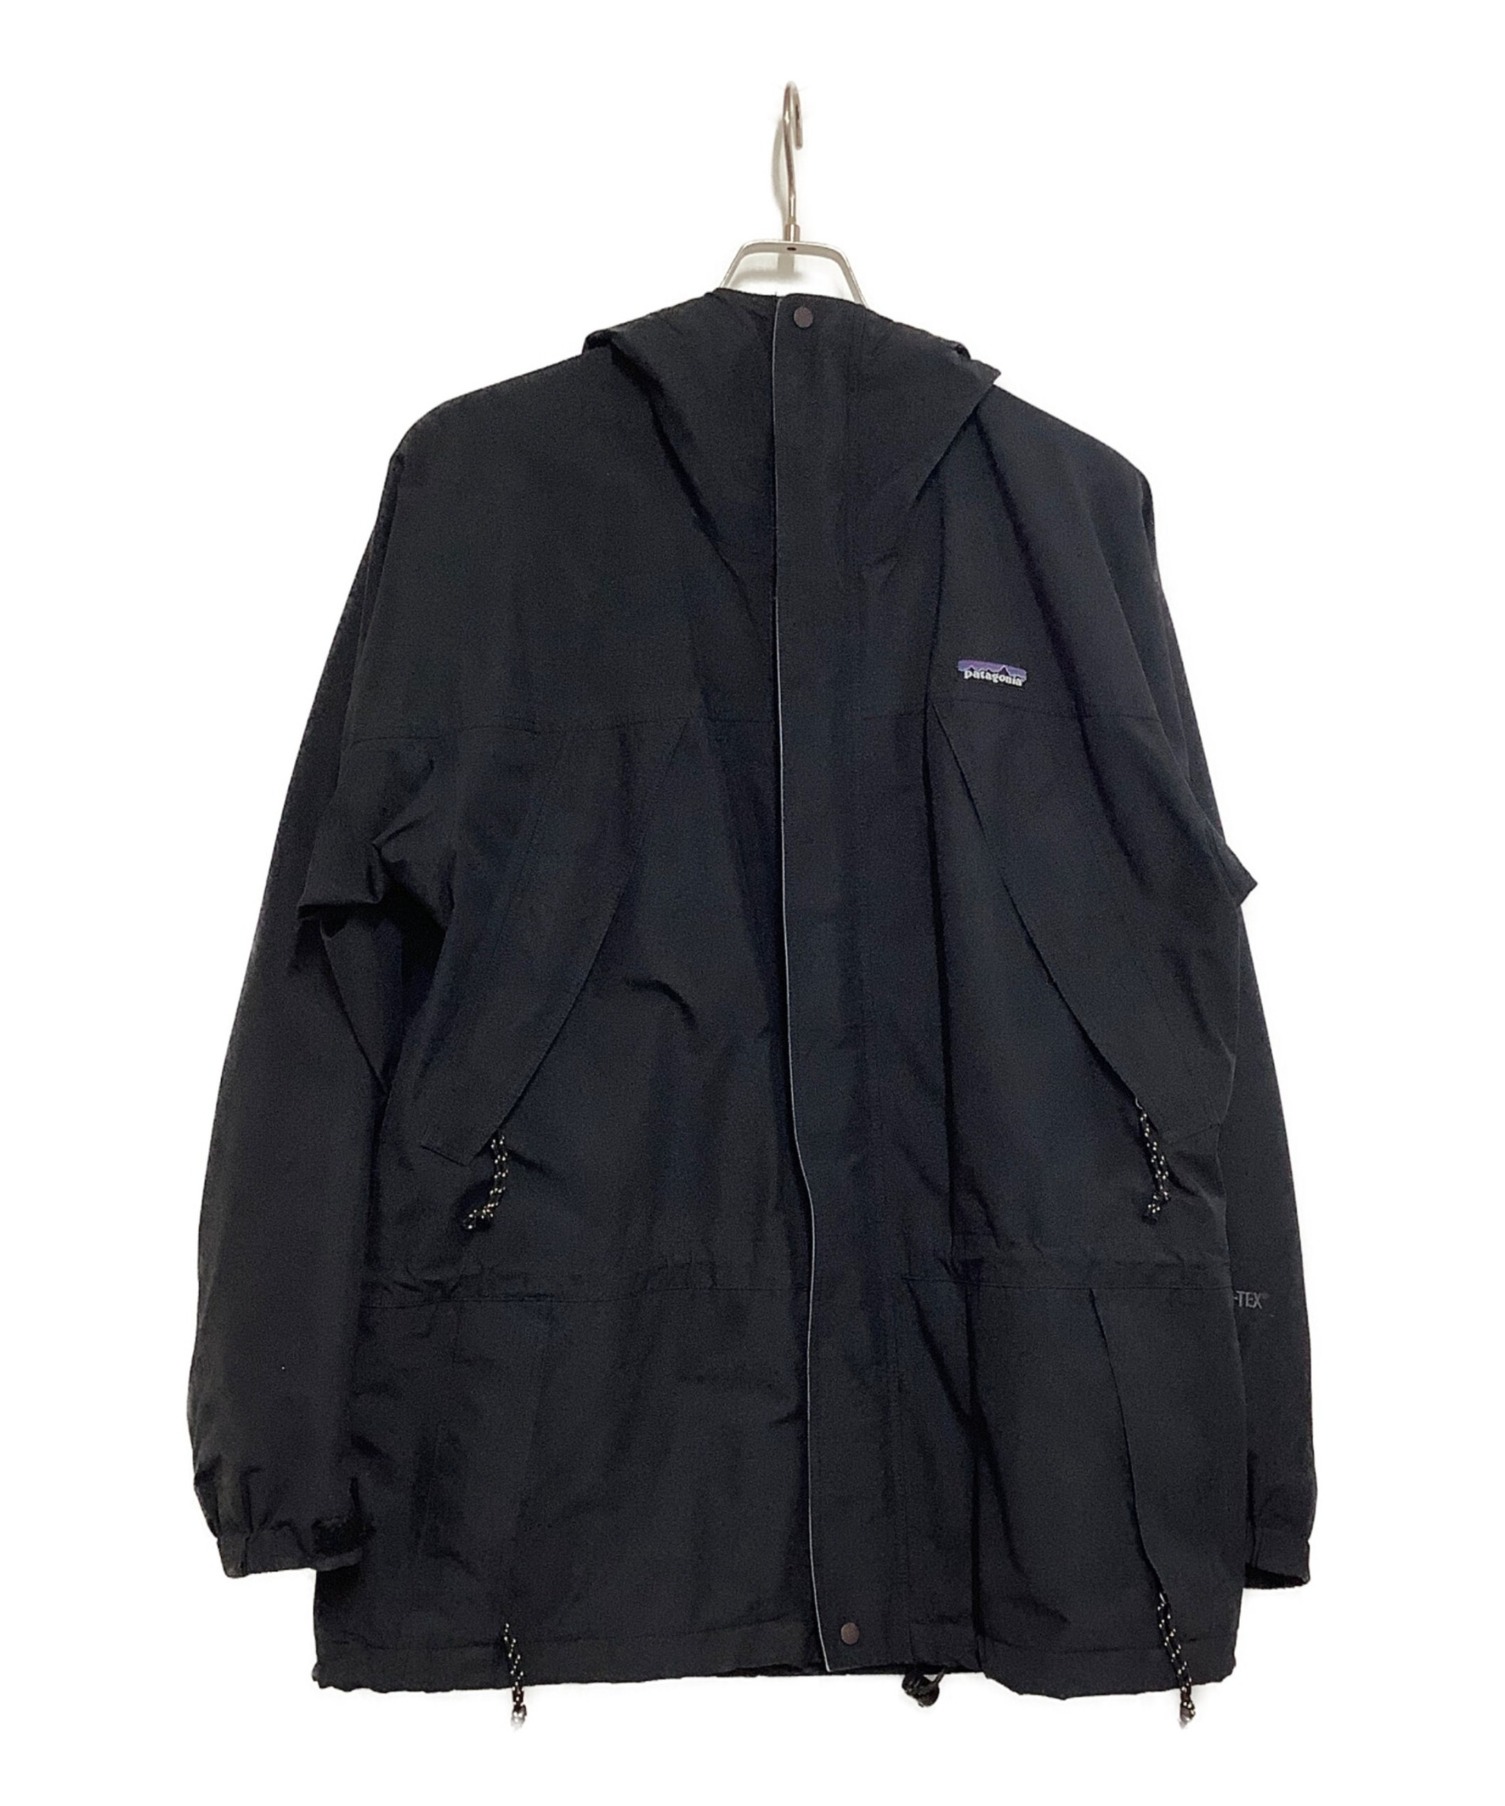 Patagonia (パタゴニア) ストームジャケット ブラック サイズ:M